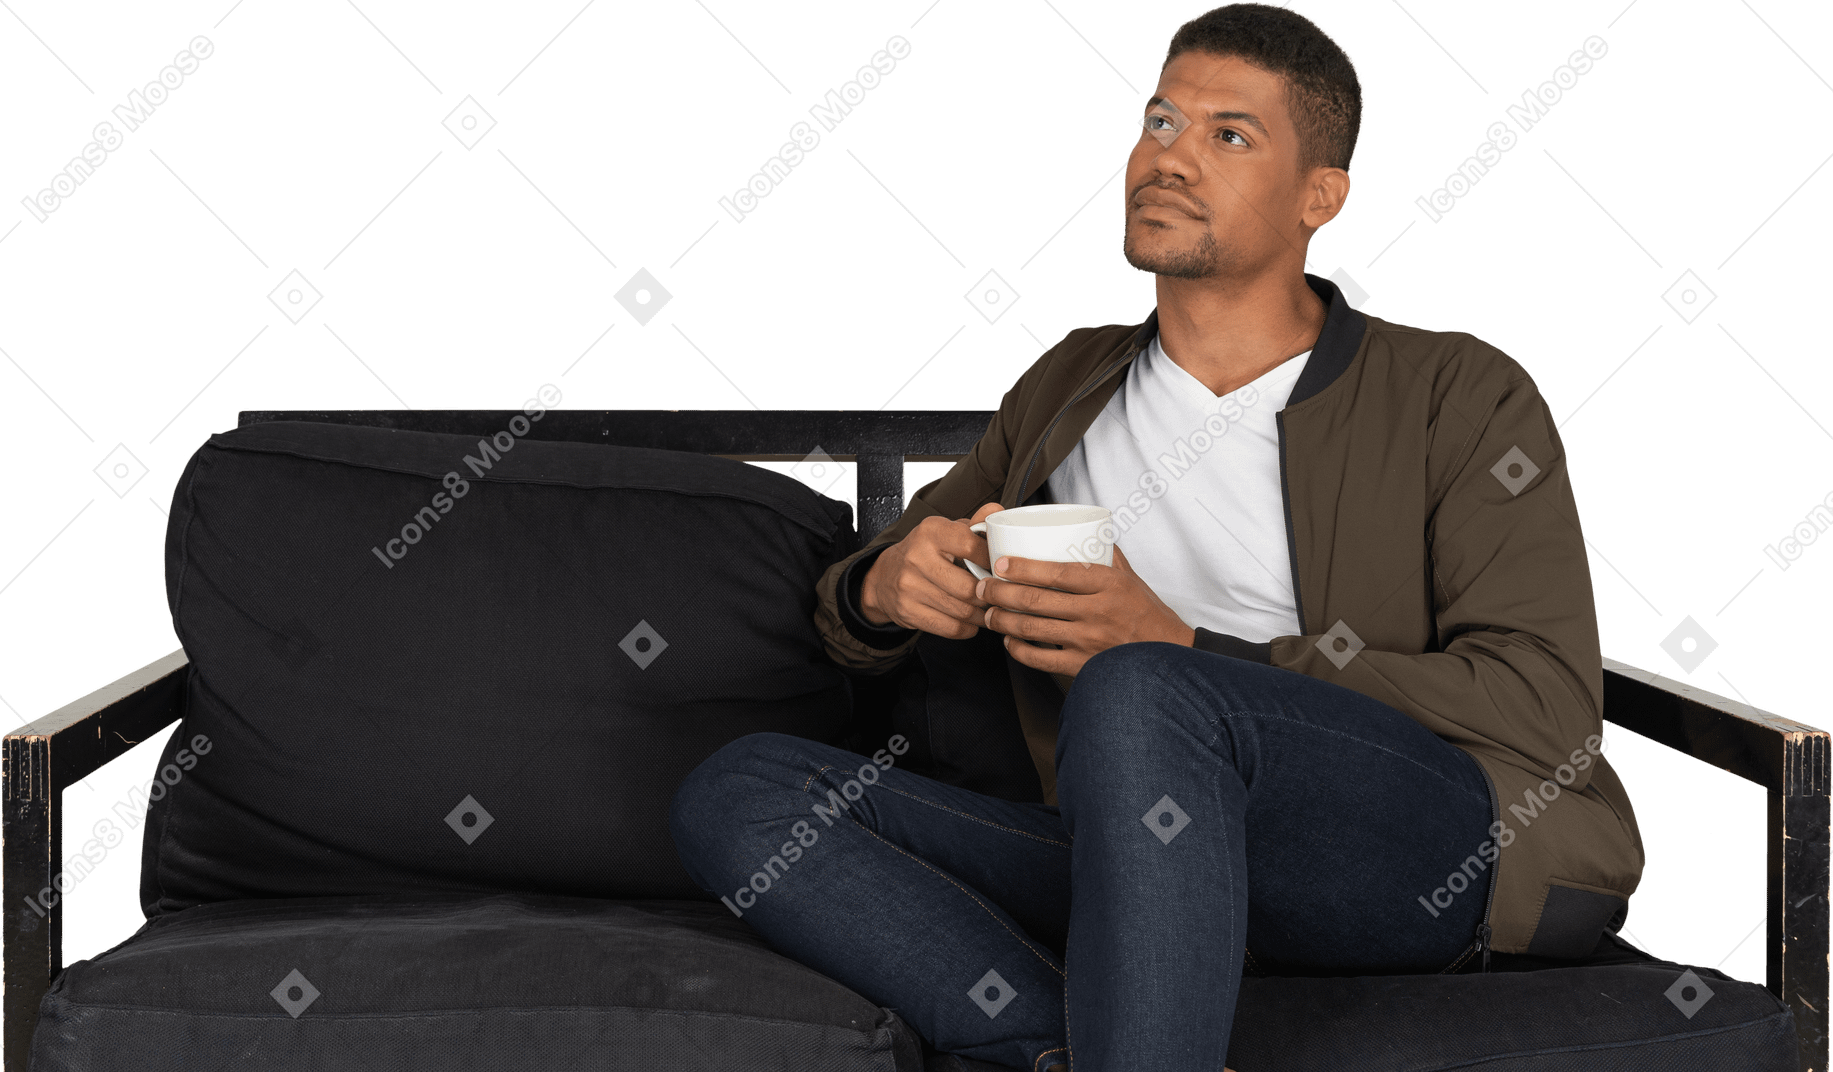 Vista frontal de un joven soñando sentado en un sofá con una taza de café